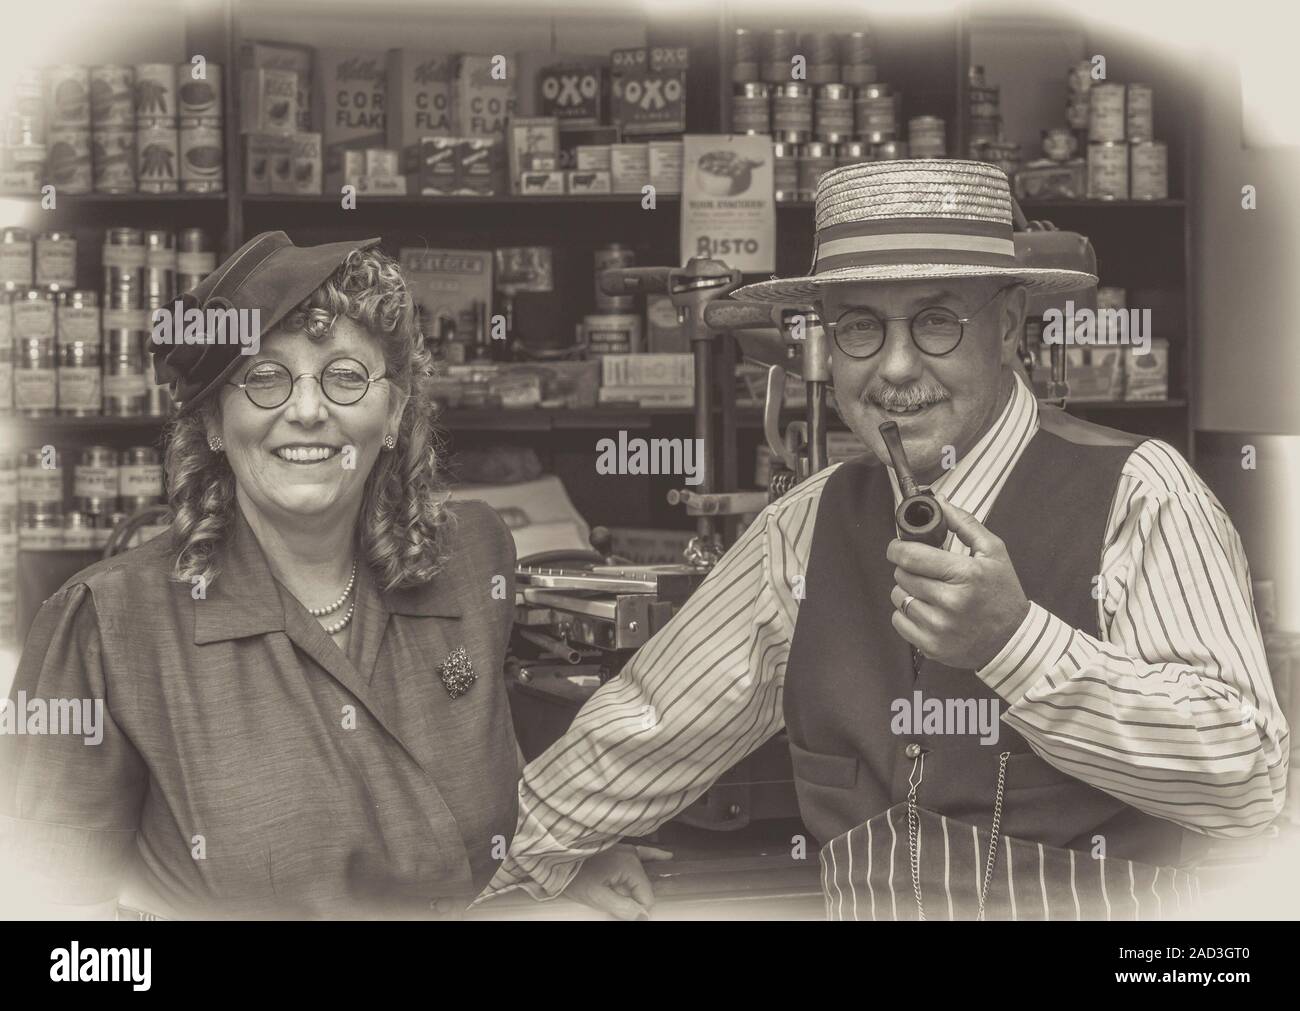 Glückliches Paar, Kleid aus den vierziger Jahren, reenacting Wartime 40s Vintage Lebensmittelgeschäft, Severn Valley Railway WWII Event; Schwarz-Weiß-Foto mit Vignette. Stockfoto